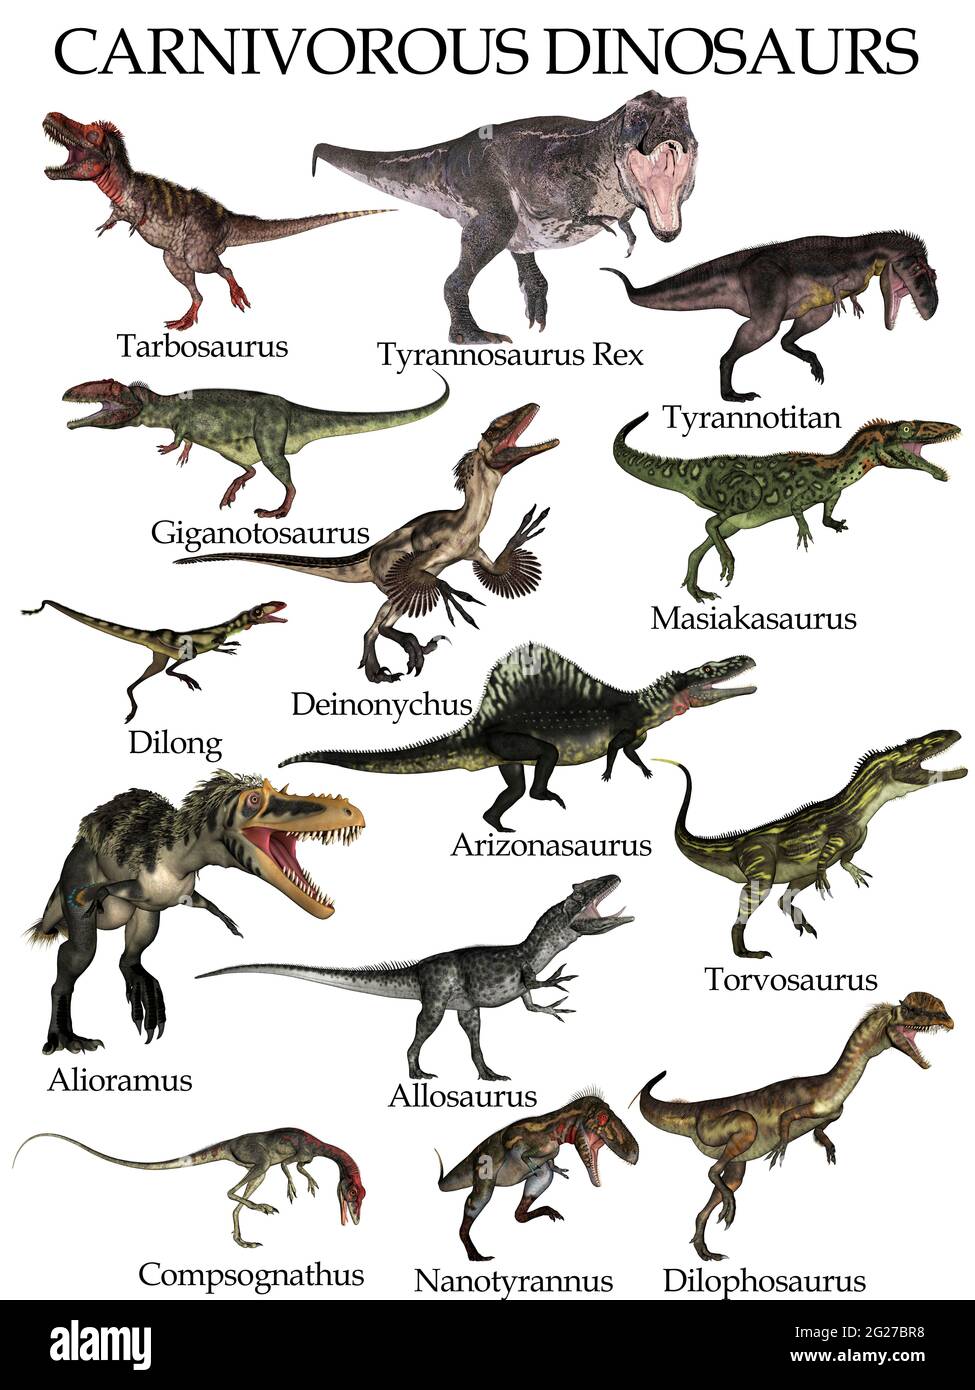 Dinosaurios carnívoros fotografías e imágenes de alta resolución - Alamy